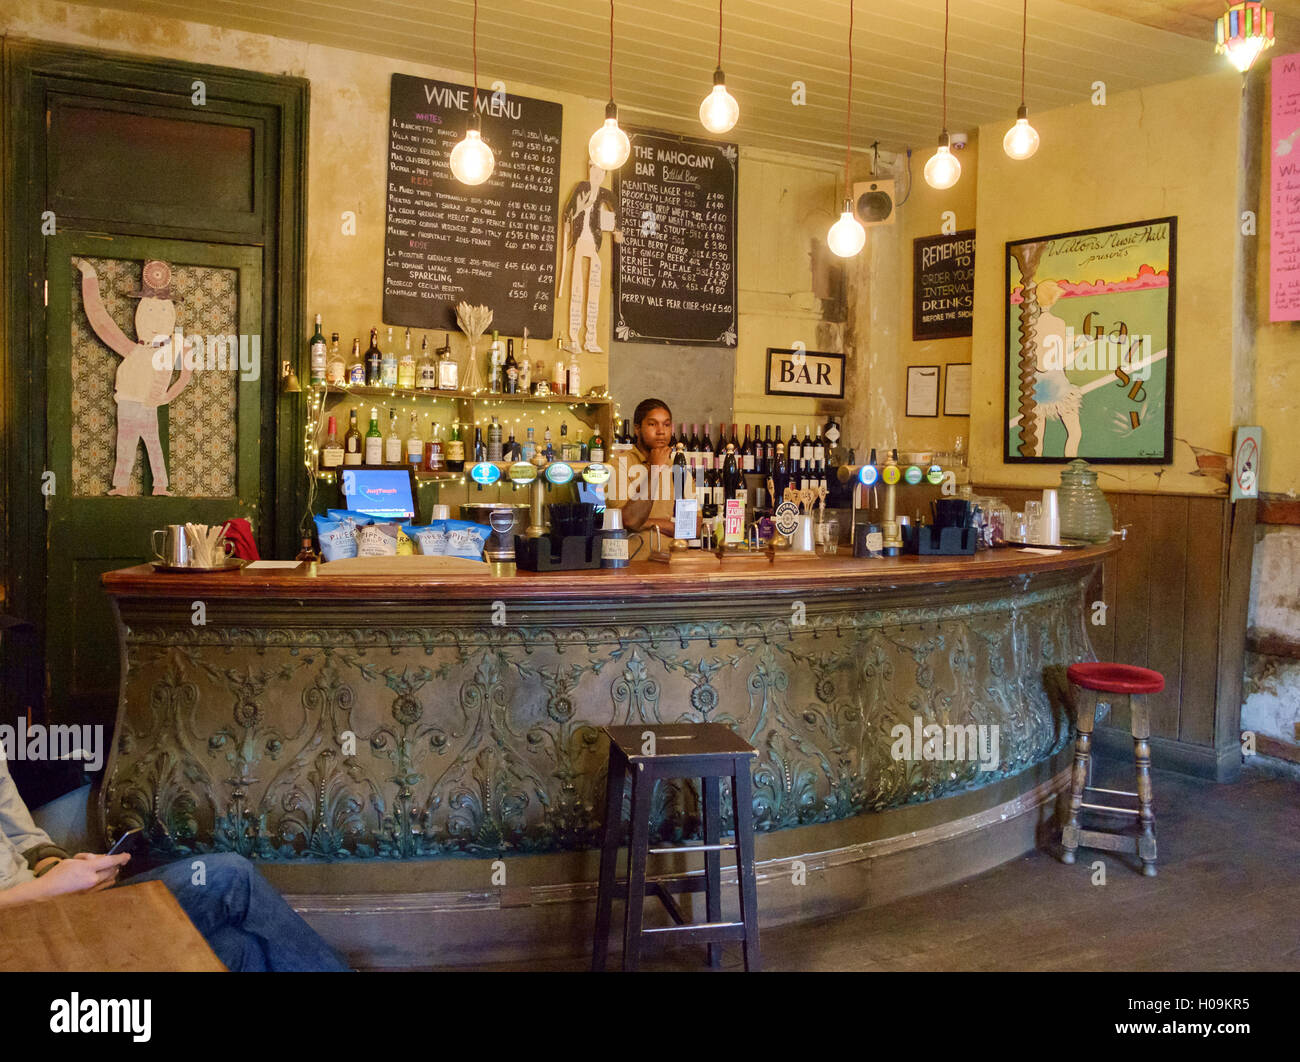 Barra de bar con listones de madera  Restaurant bar, Home decor, Barra bar